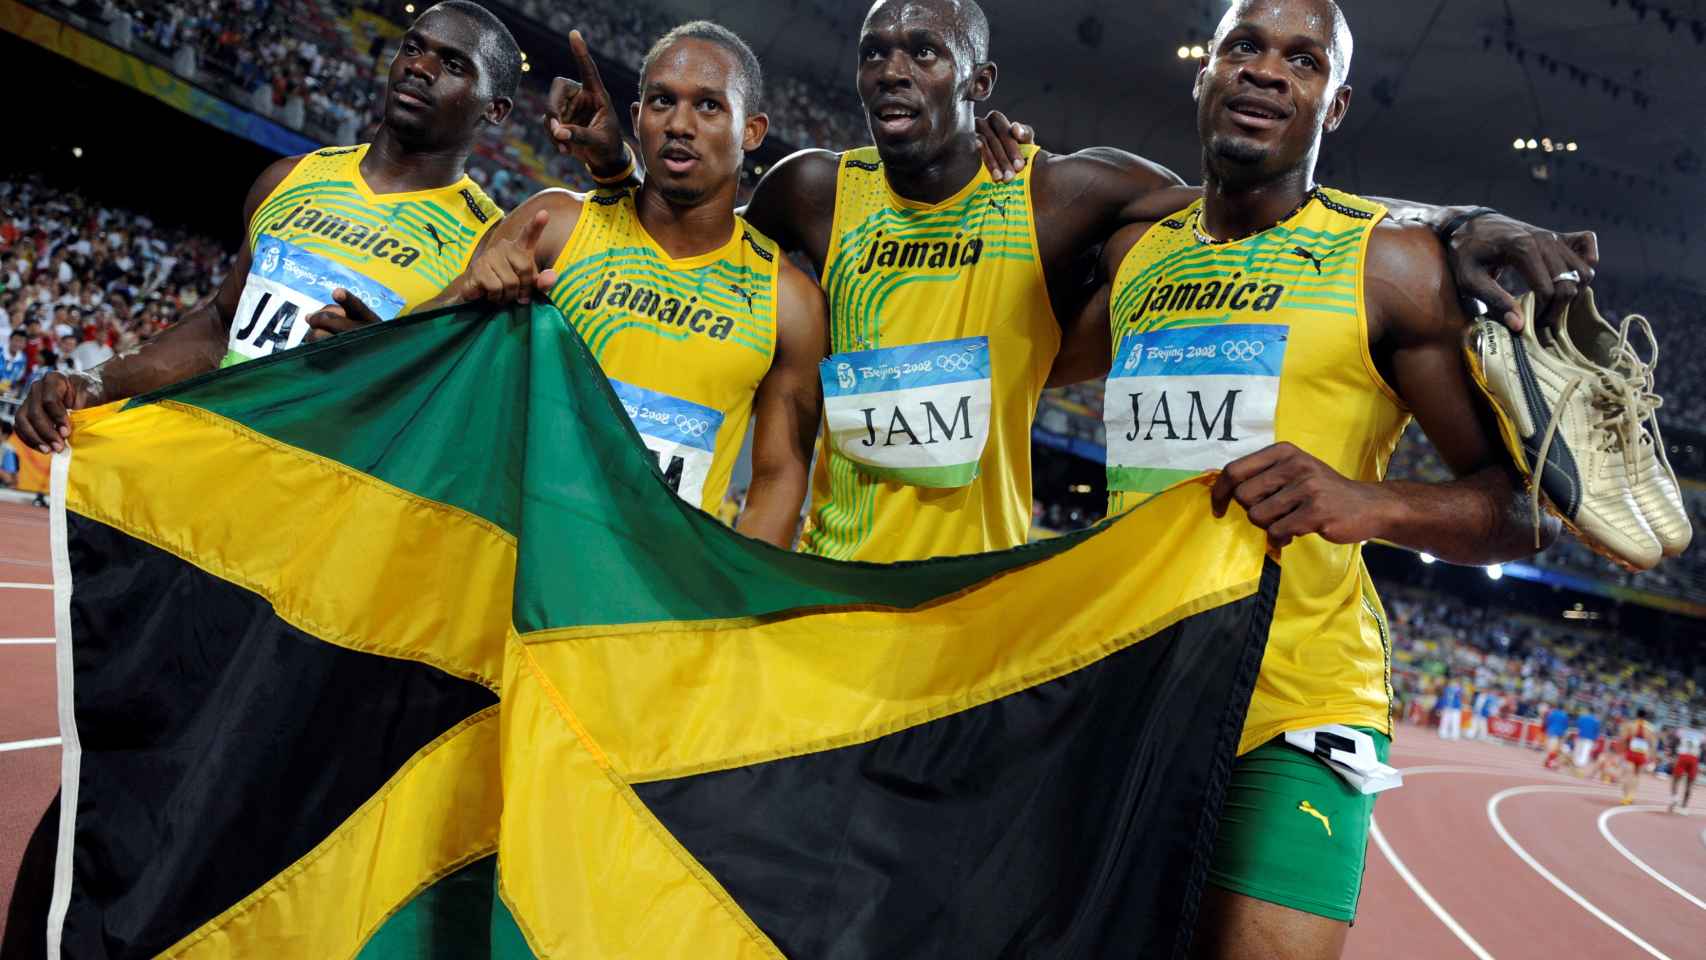 El equipo jamaicano del 4x100 con Usain Bolt y Nesta Carter